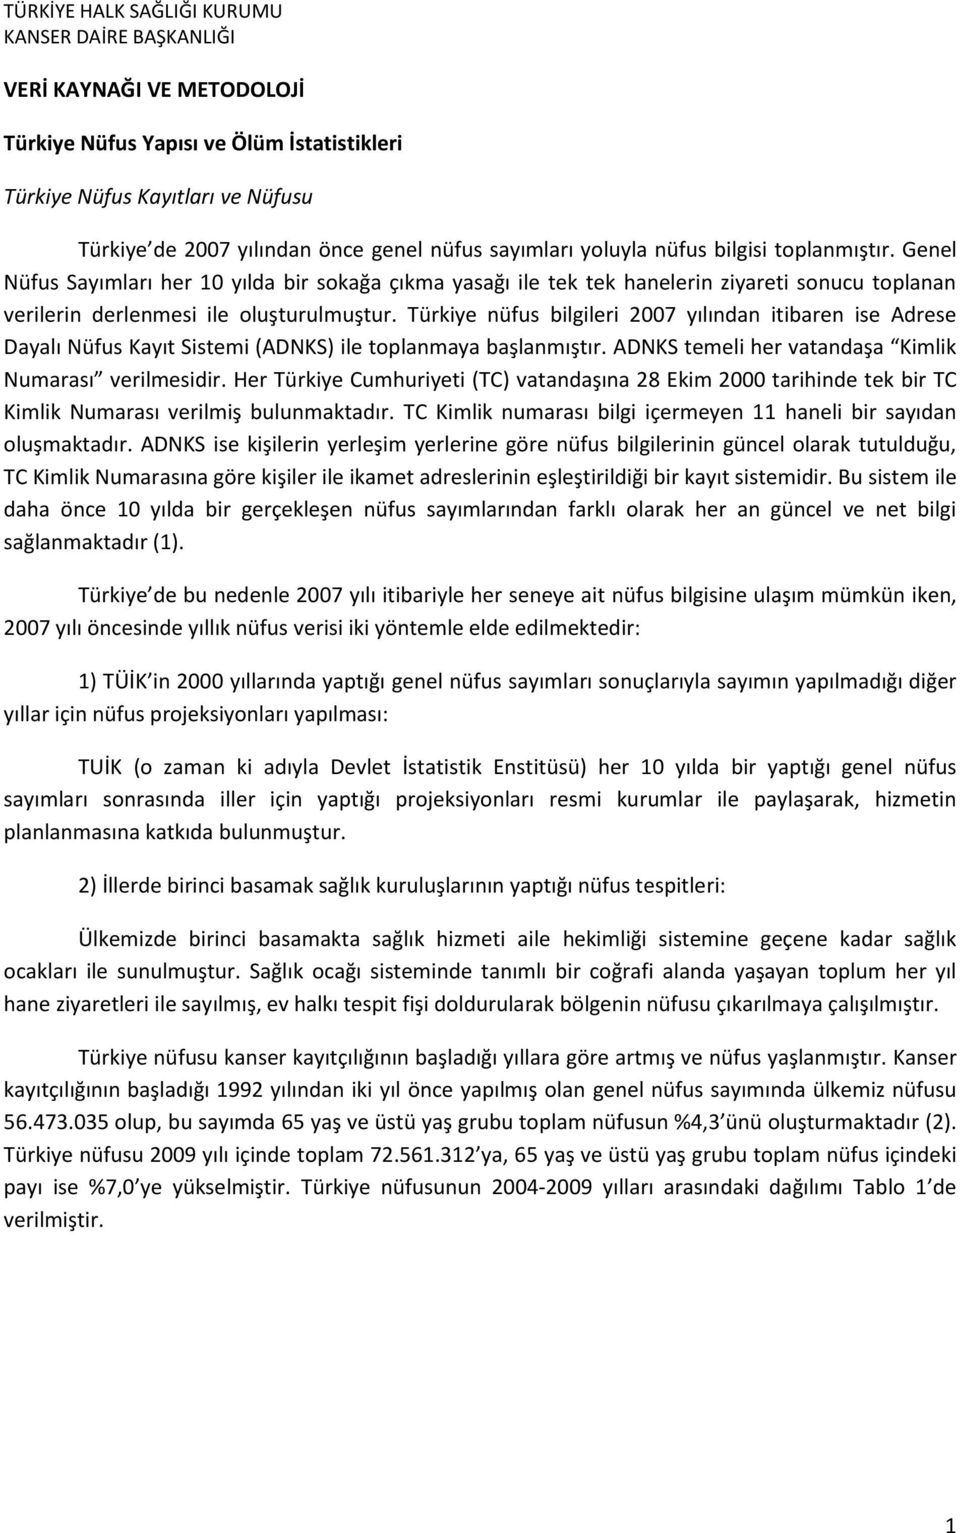 Türkiye nüfus bilgileri 2007 yılından itibaren ise Adrese Dayalı Nüfus Kayıt Sistemi (ADNKS) ile toplanmaya başlanmıştır. ADNKS temeli her vatandaşa Kimlik Numarası verilmesidir.